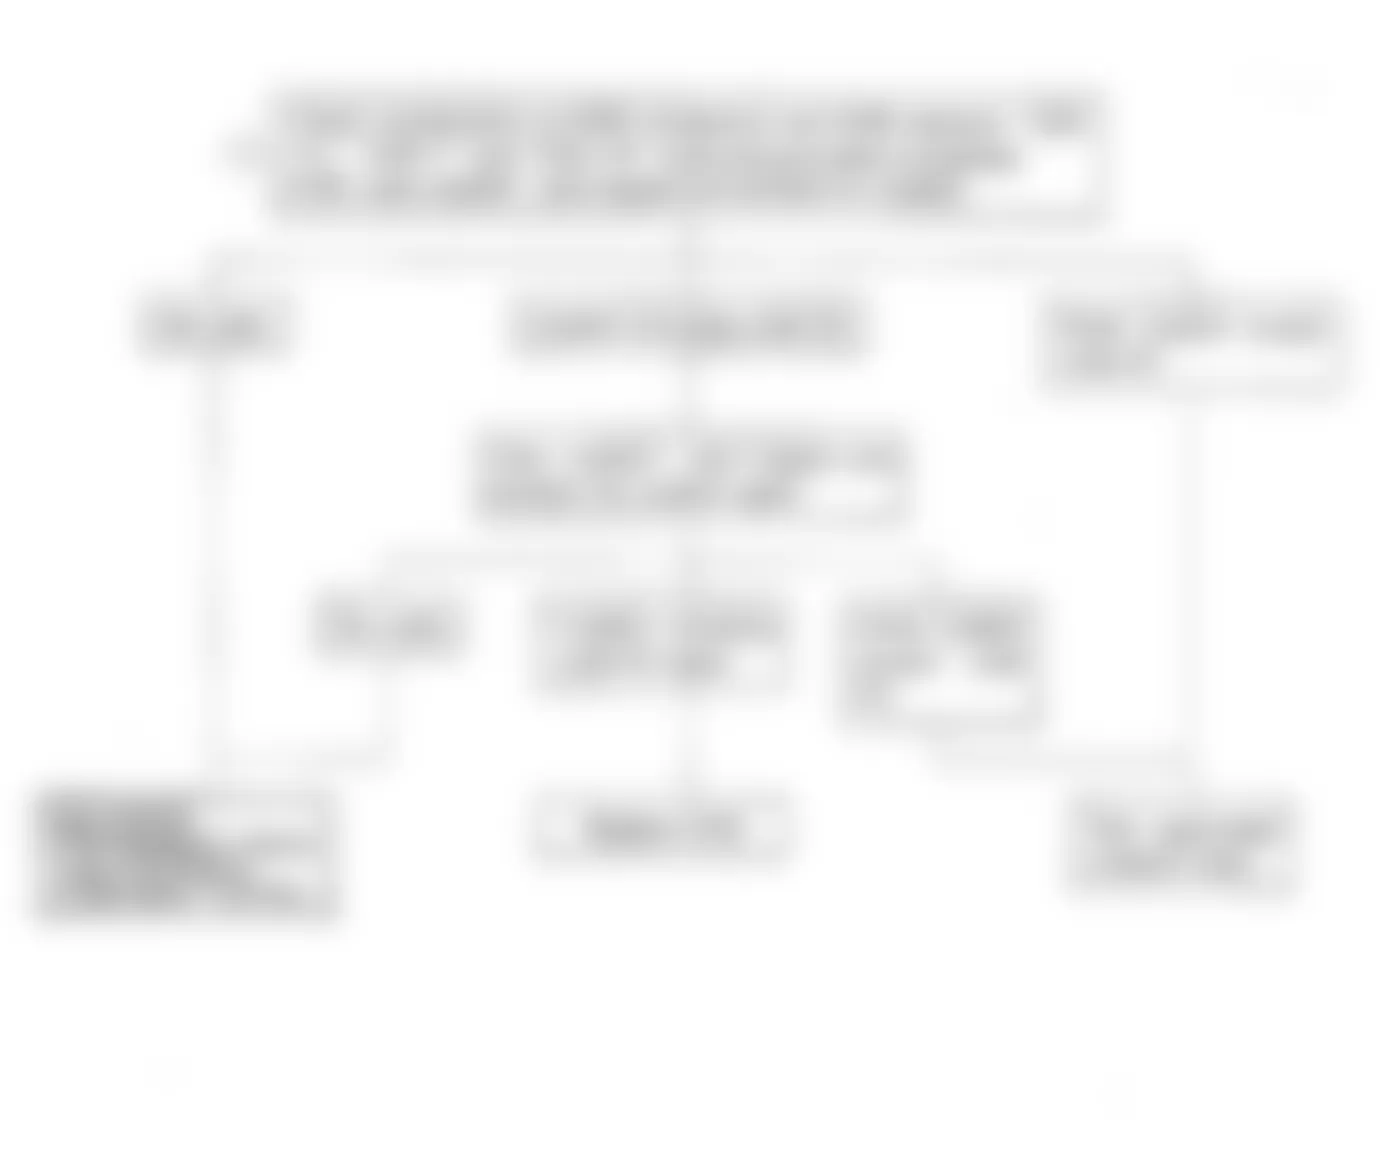 Isuzu Amigo S 1991 - Component Locations -  Code No. 52 Flow Chart, Faulty ECM Ram